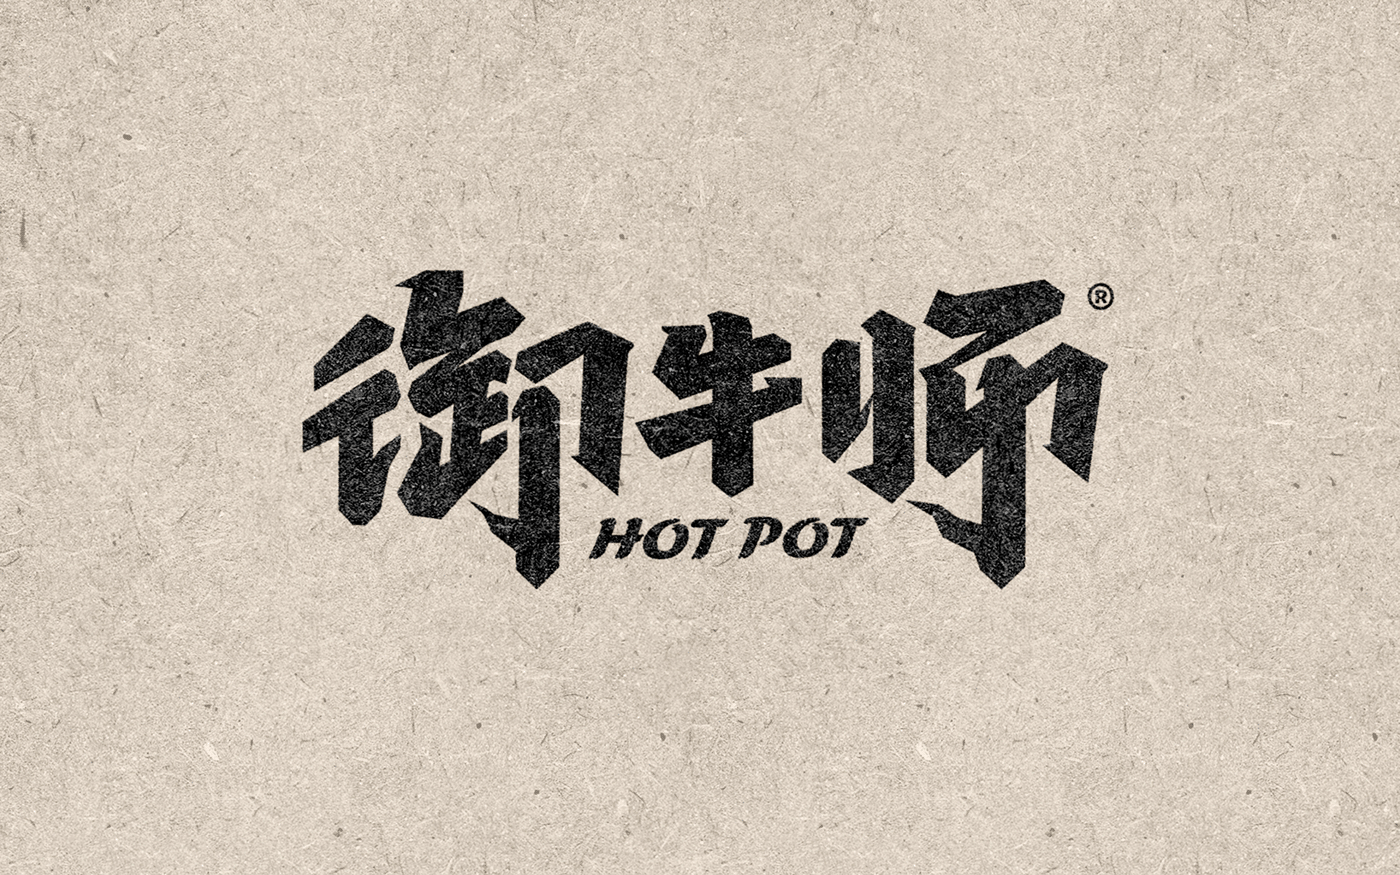 hot pot Master wagyu 和牛 御牛师 澳洲和牛 火锅 王富贵